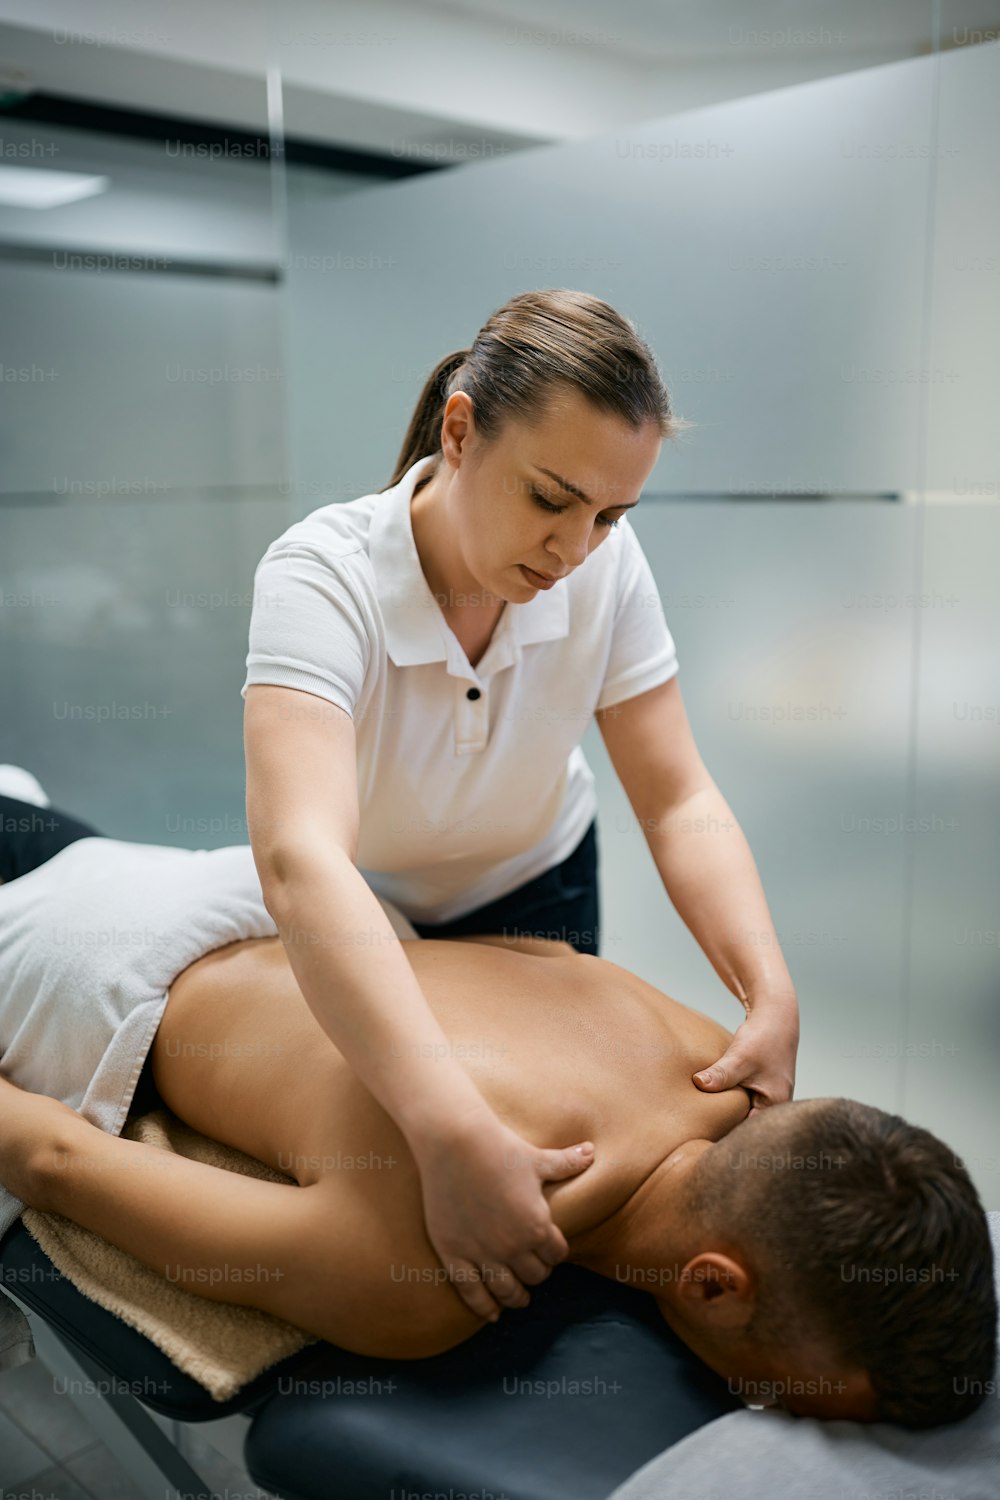 Fisioterapeuta massageando os ombros de um homem durante a fisioterapia esportiva.